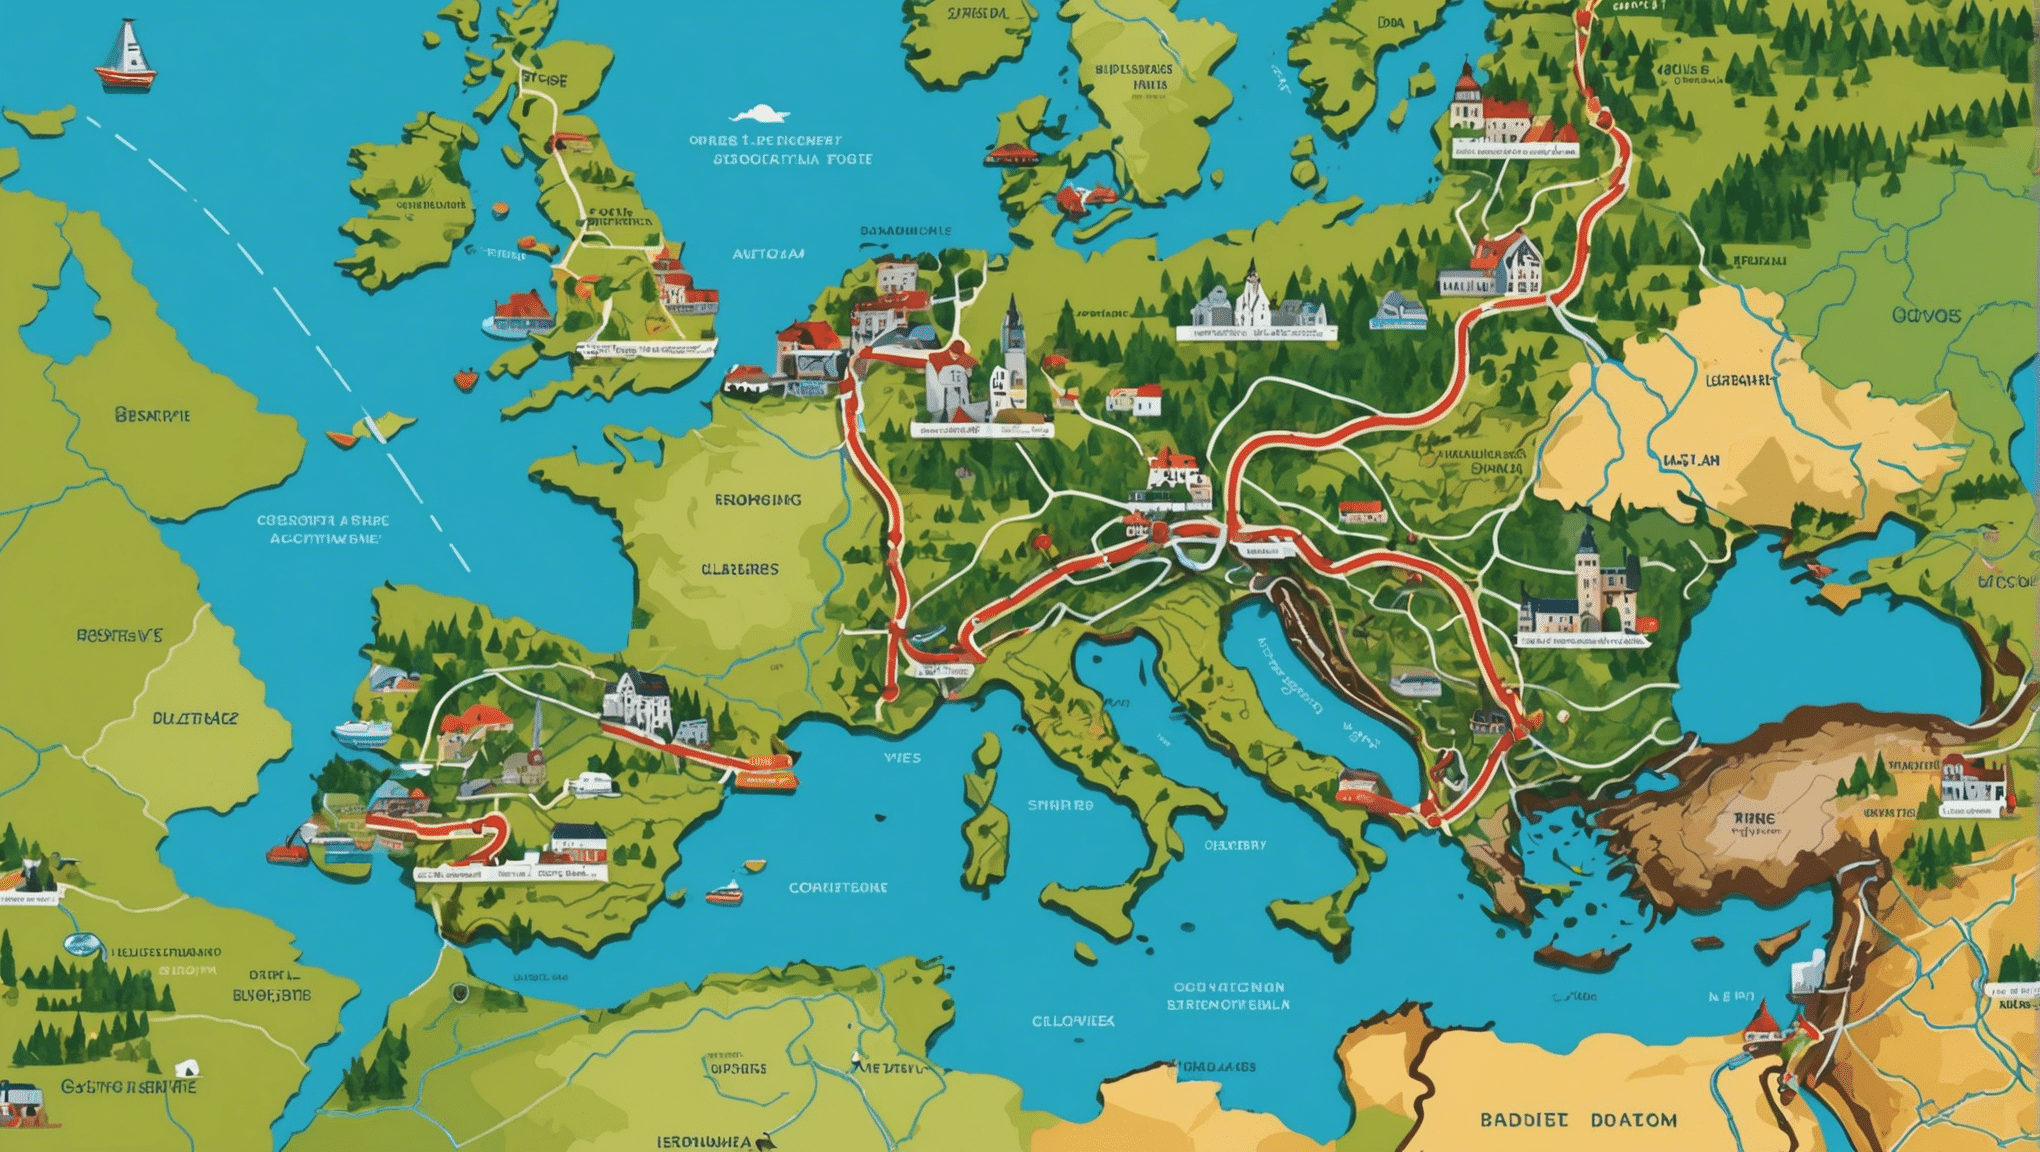 पूरे यूरोप में सबसे खूबसूरत साइकिलिंग मार्गों की खोज करें और महाद्वीप के शानदार परिदृश्यों के साथ एक साहसिक यात्रा पर निकल पड़ें।